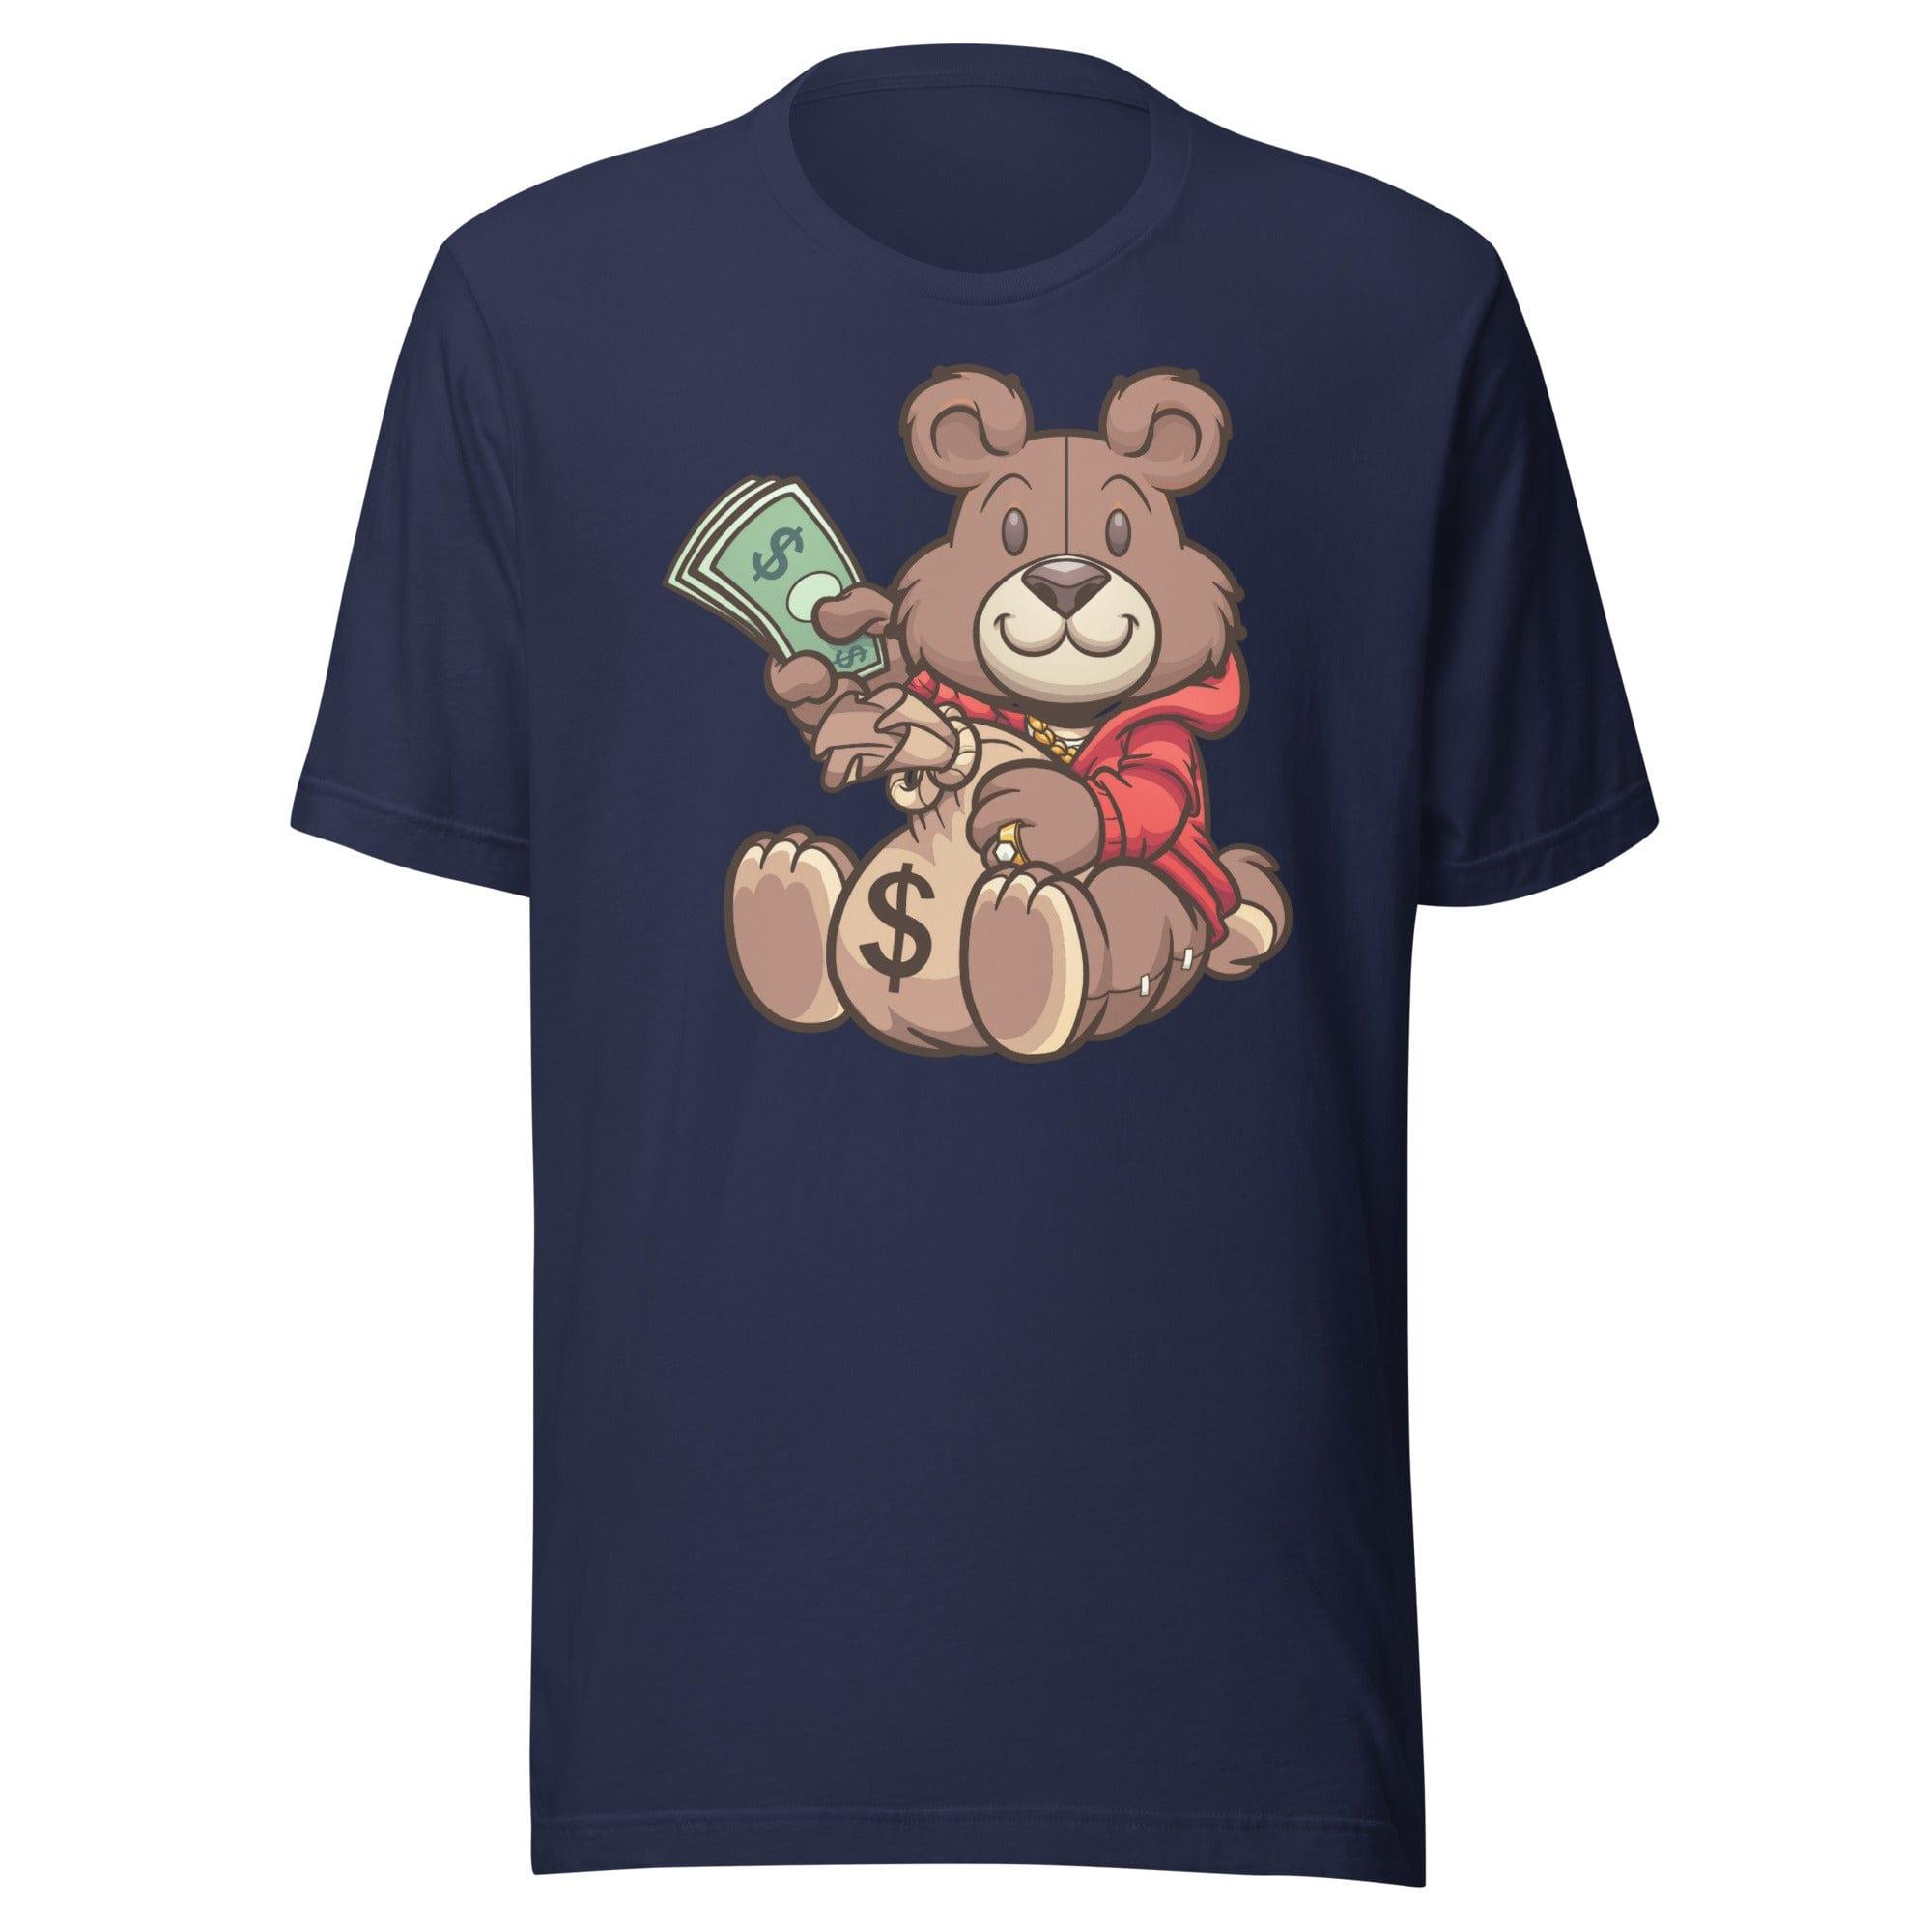 Hustler T-shirt Urban Teddy Bear Series Moneybags and Stacks of Cash Short Sleeve Unisex Top - TopKoalaTee